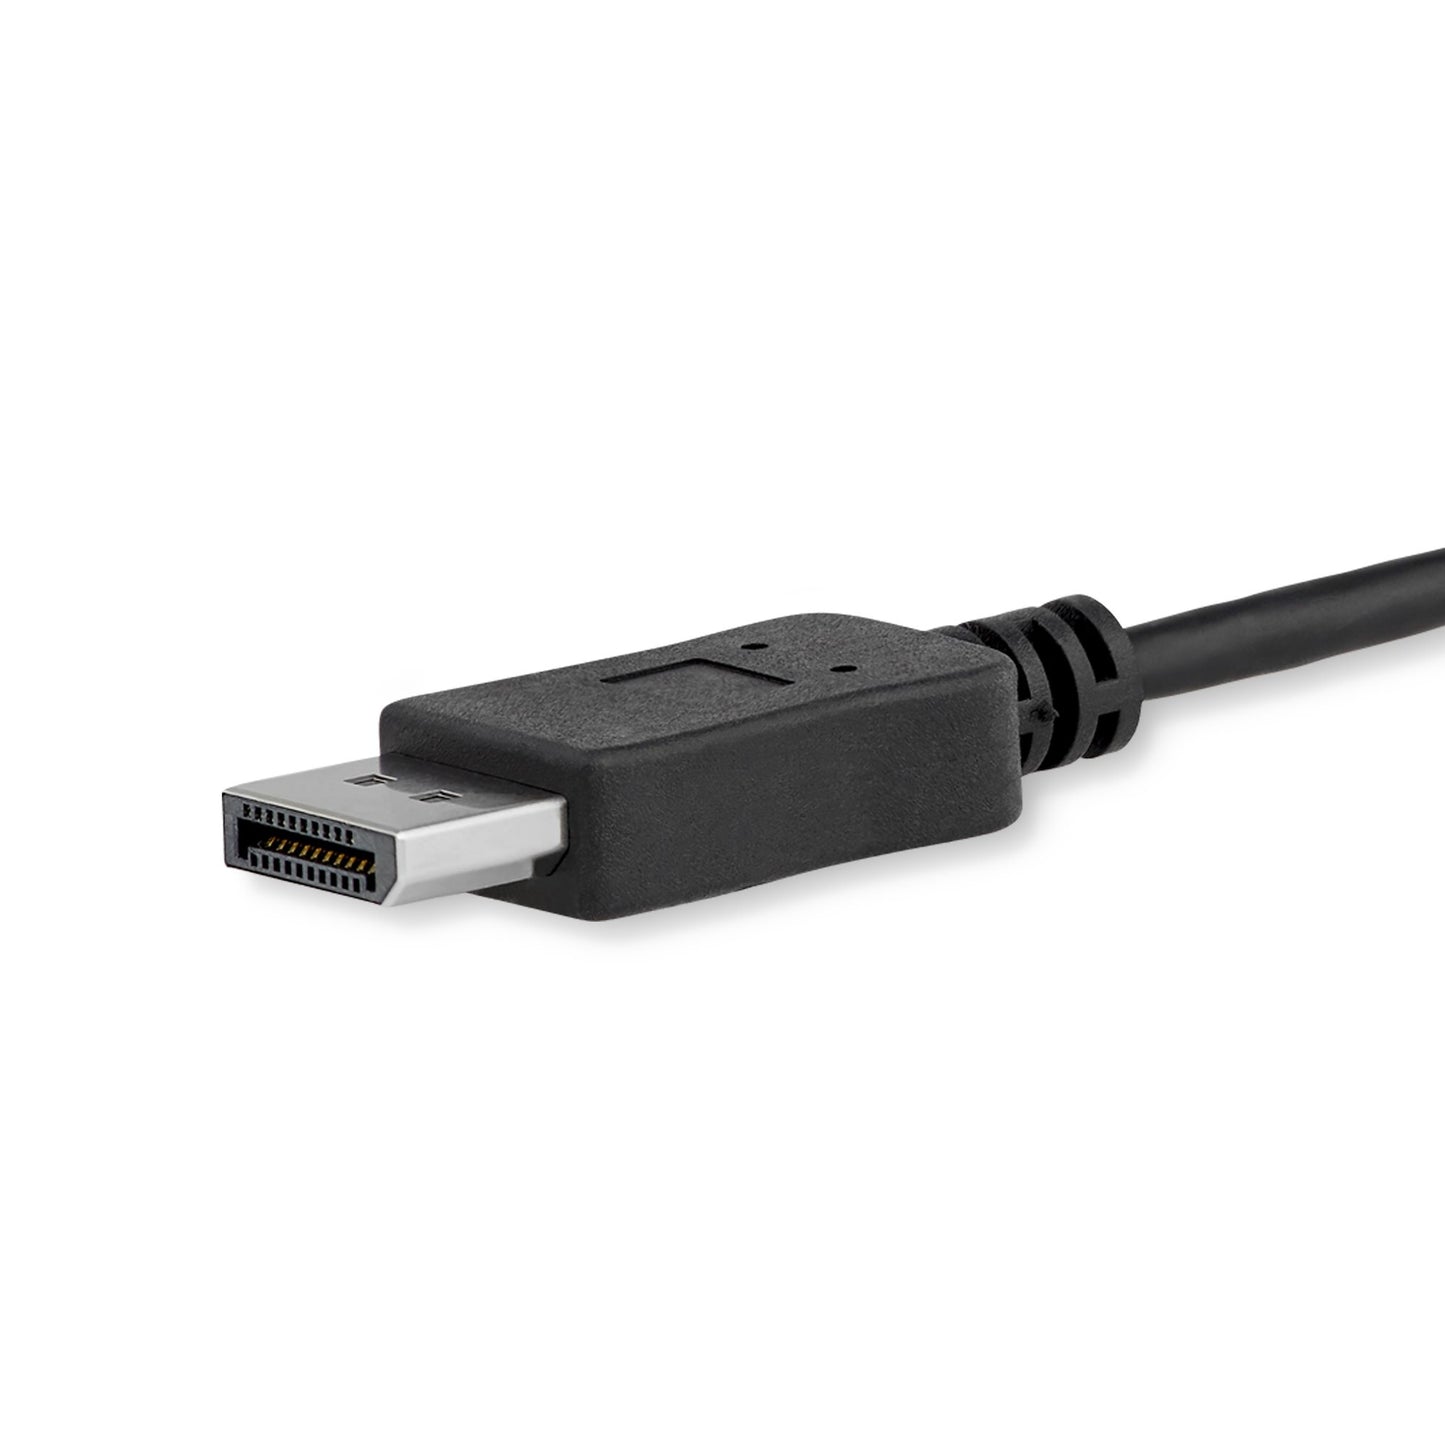 CABLE ADAPTADOR USB-C A ADAP DISPLAYPORT 1M 4K 60HZ .